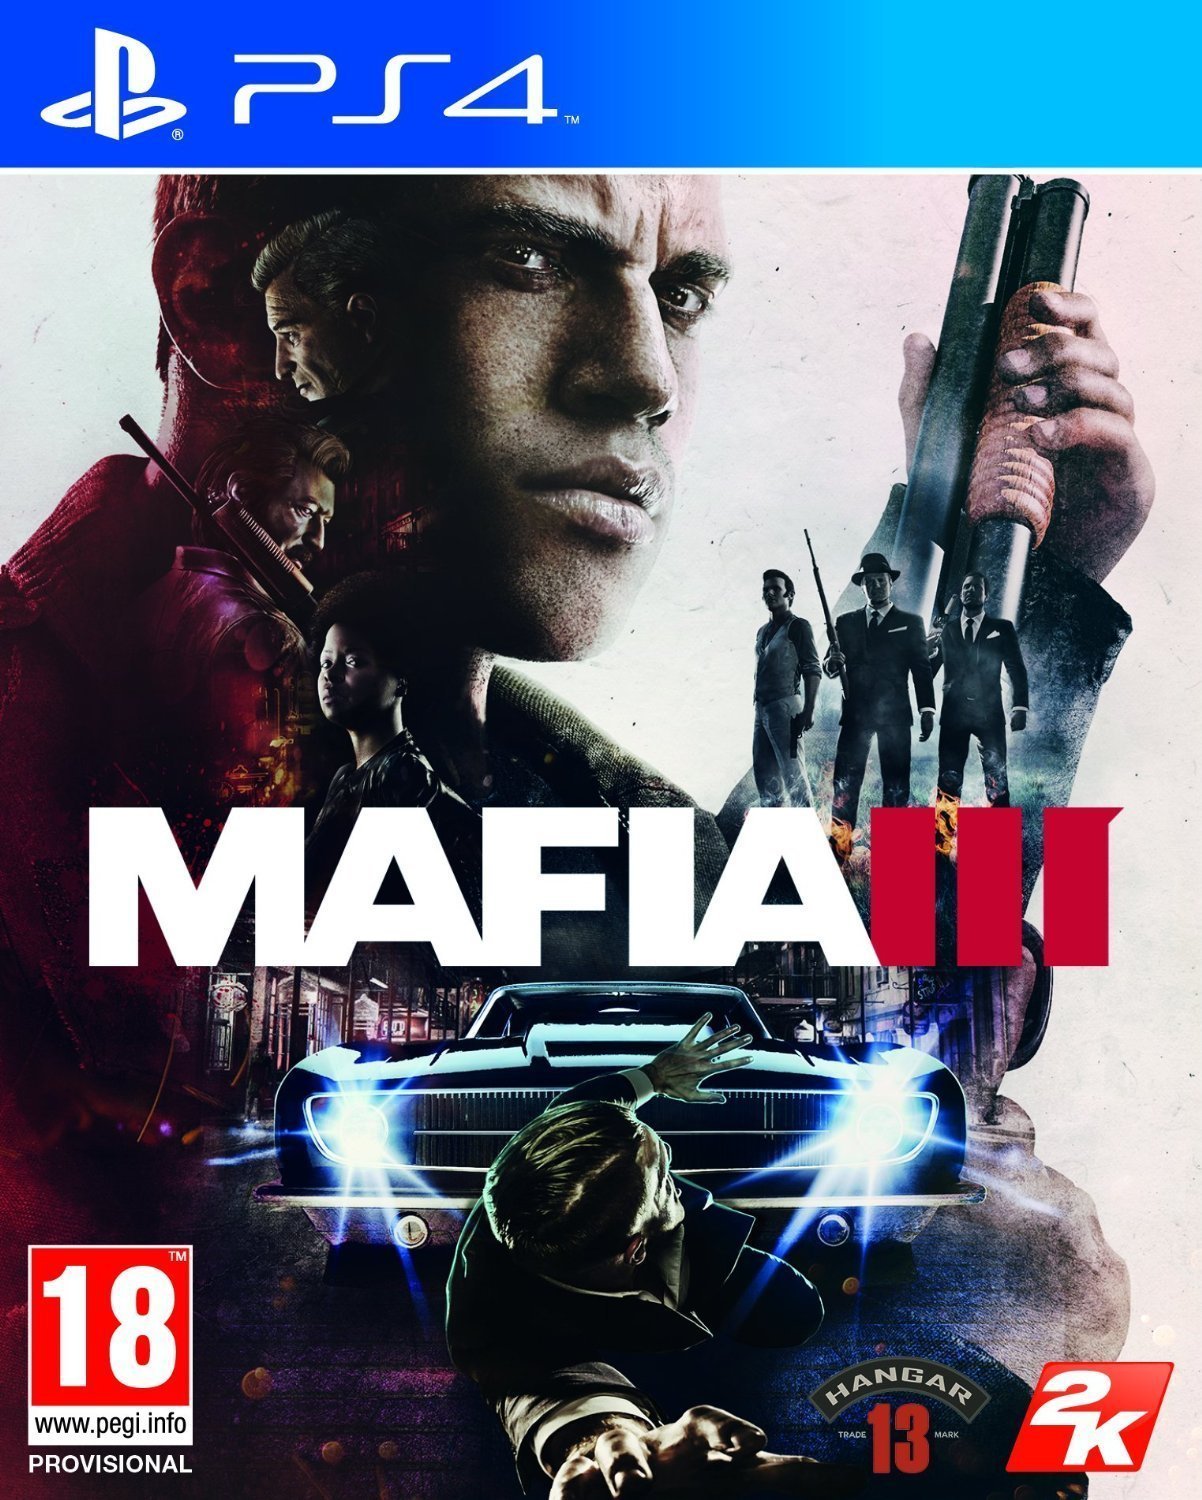 Mafia Iii (PS4, Rus Sub)